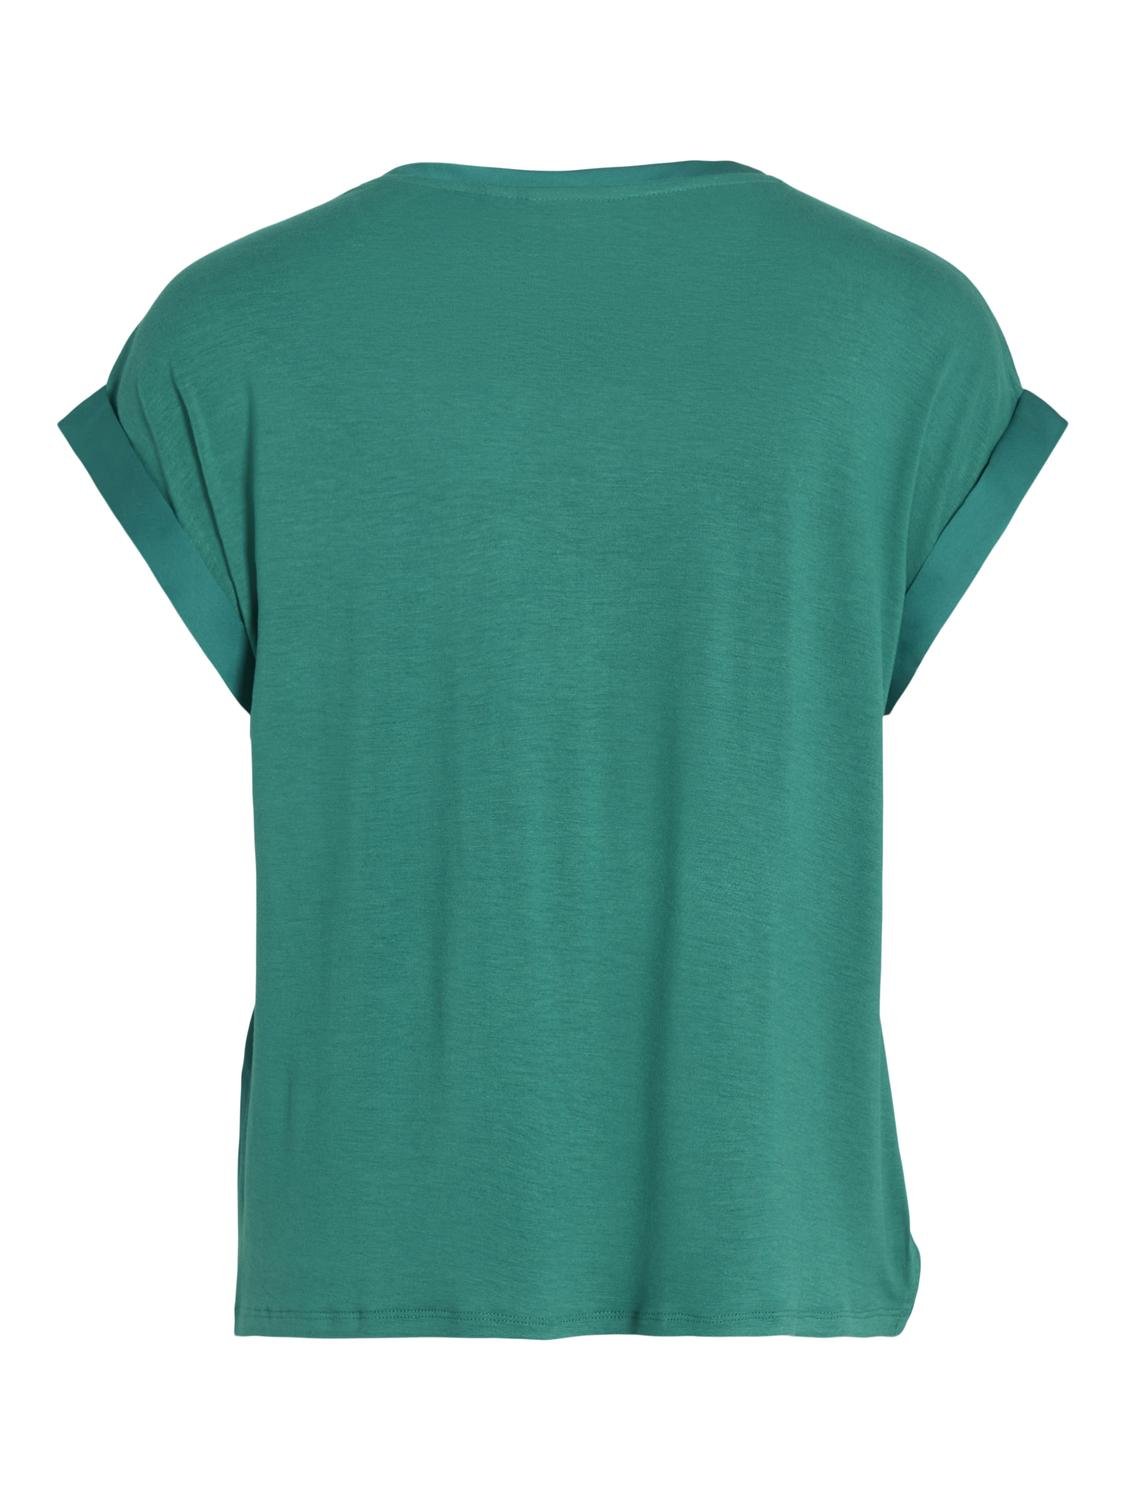 VIELLETTE T-Shirts & Tops - Ultramarine Green